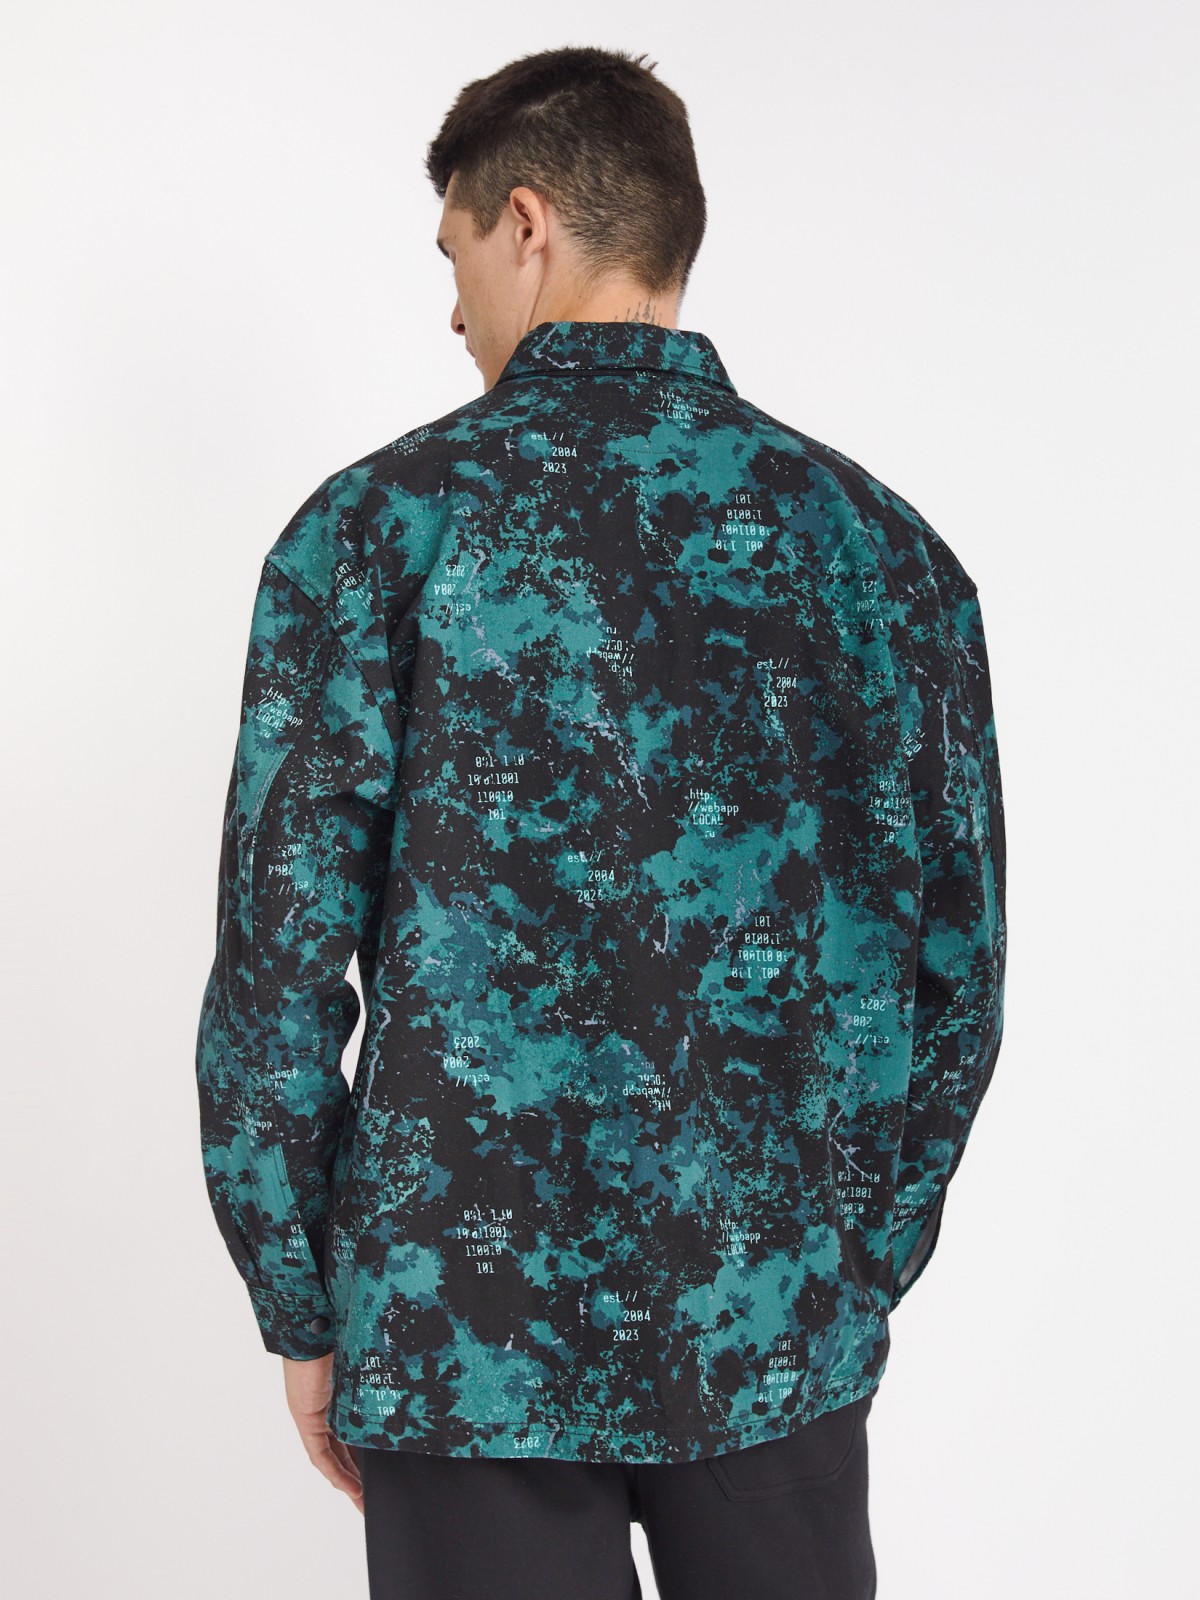 Куртка-рубашка из хлопка с принтом и нагрудным карманом zolla 213322191021, цвет бирюзовый, размер S - фото 6